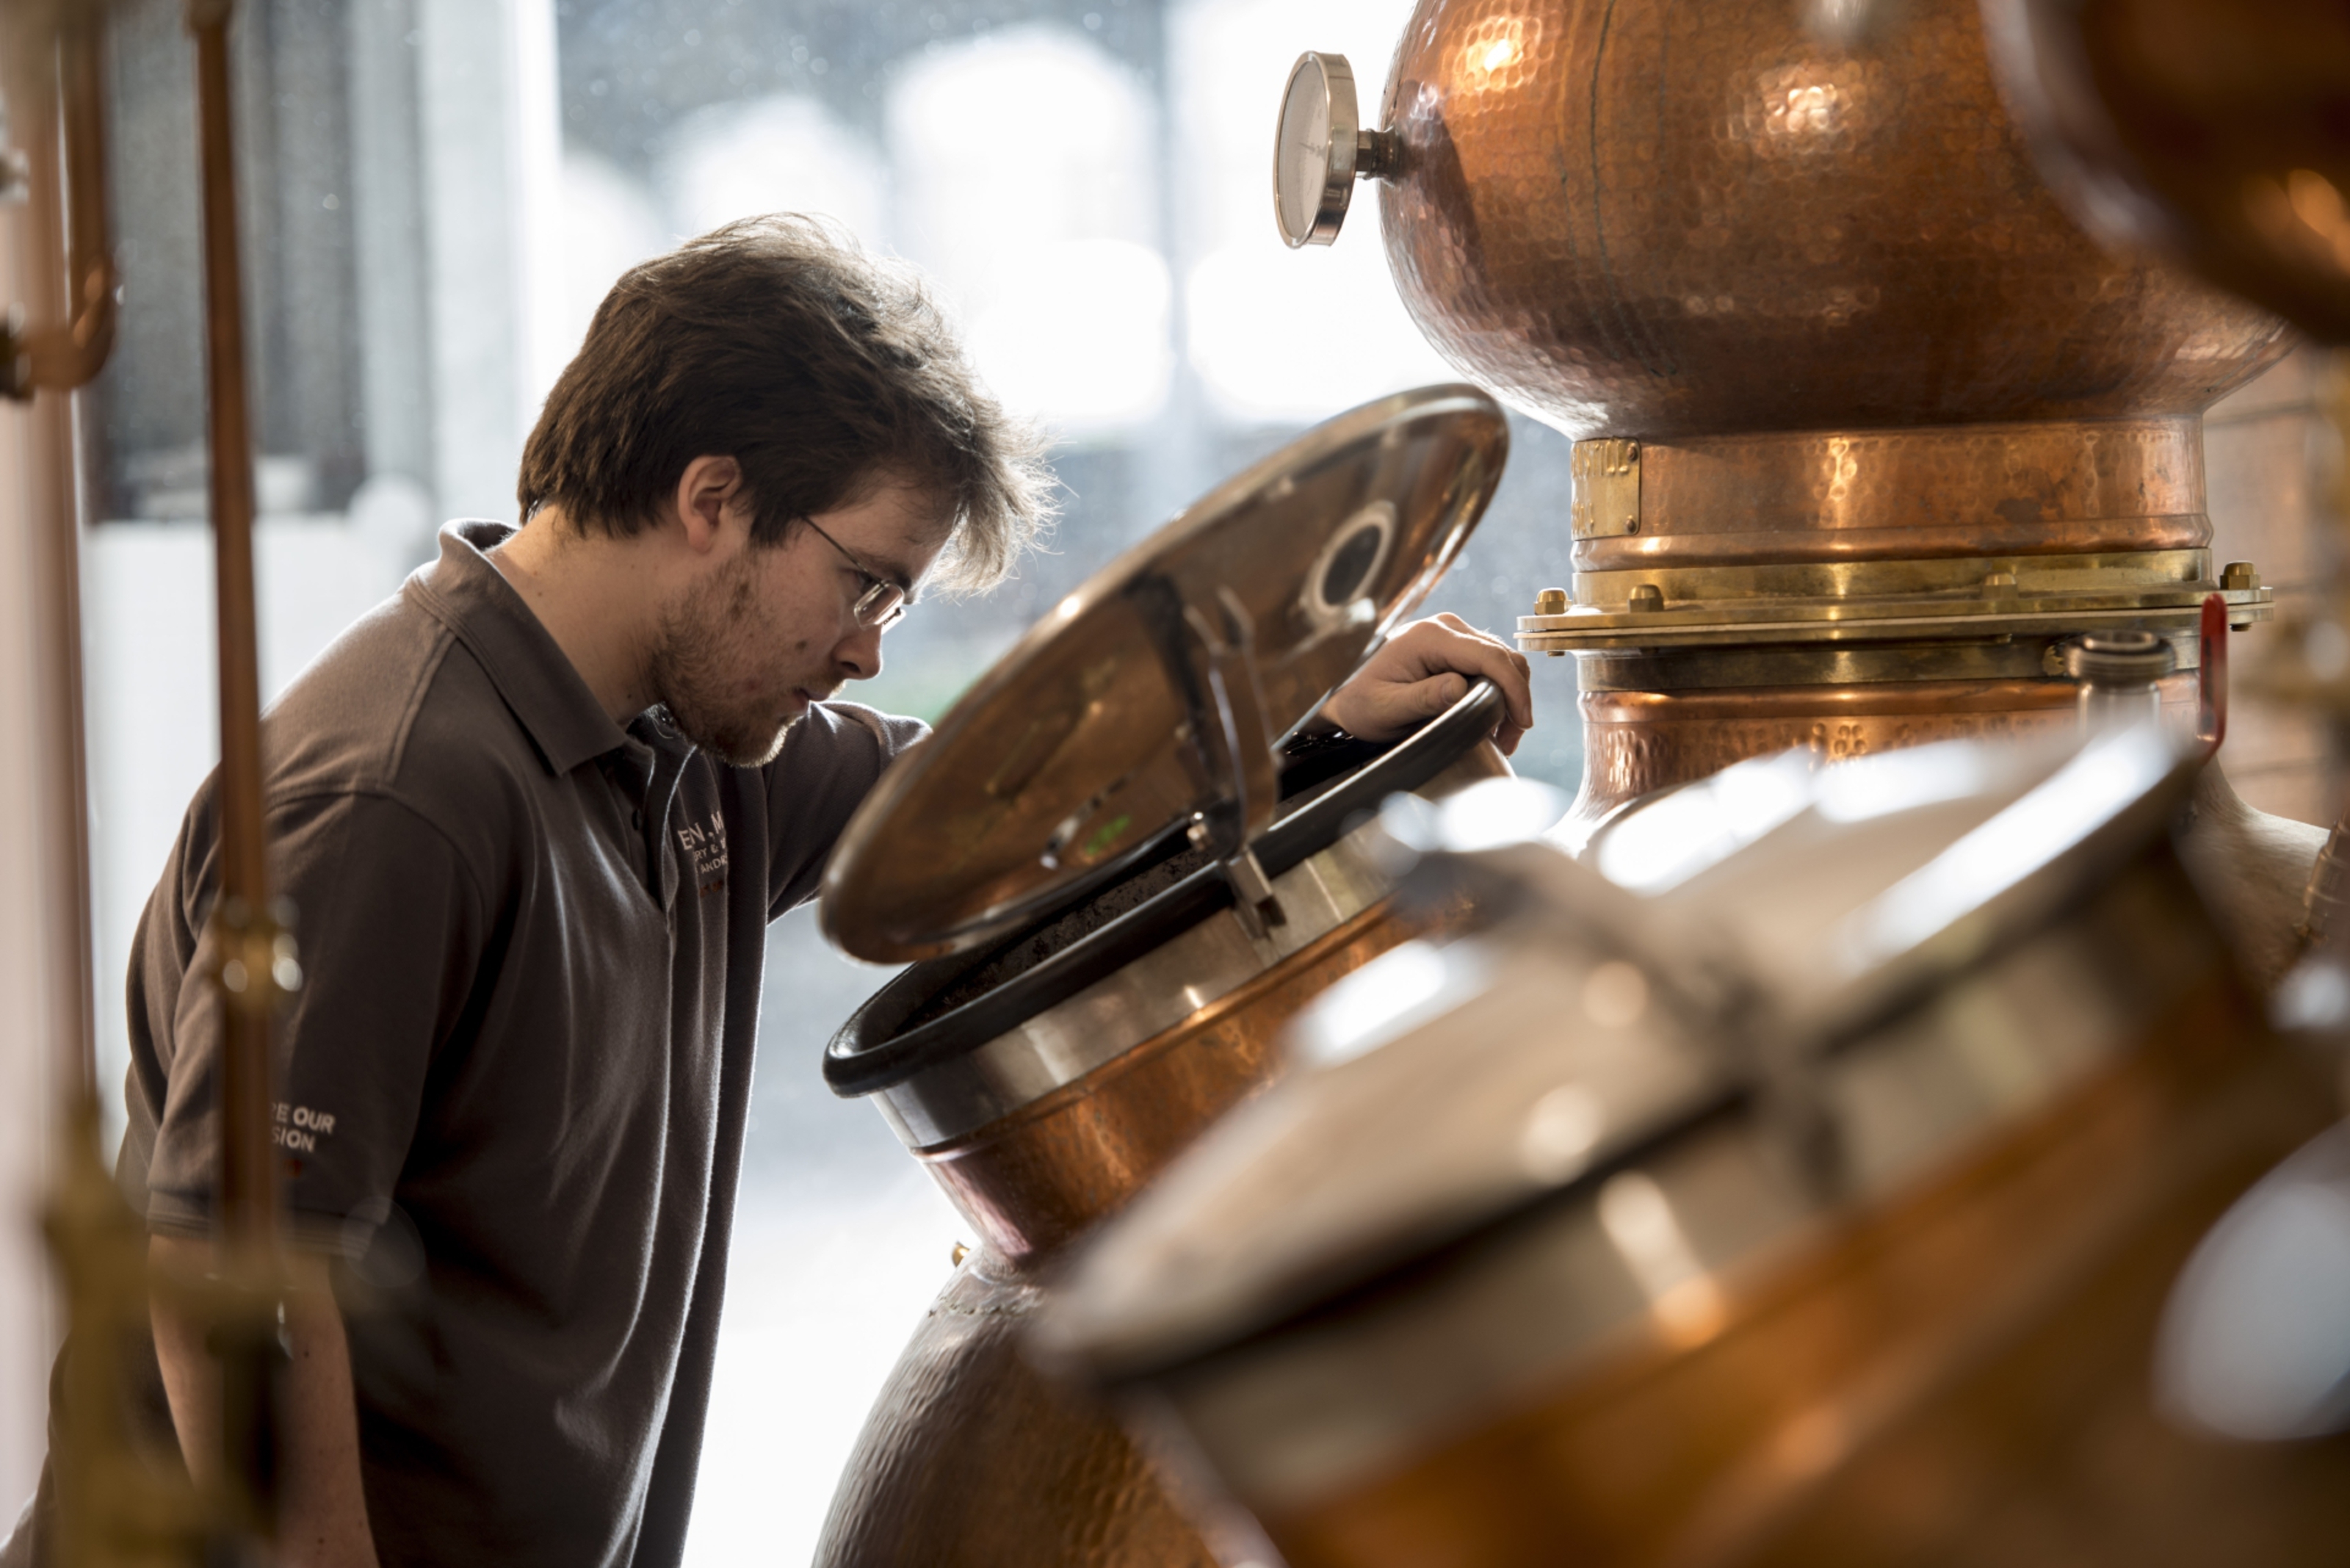 Scott Ferguson, head distiller at Eden Mill, inspects copper still.